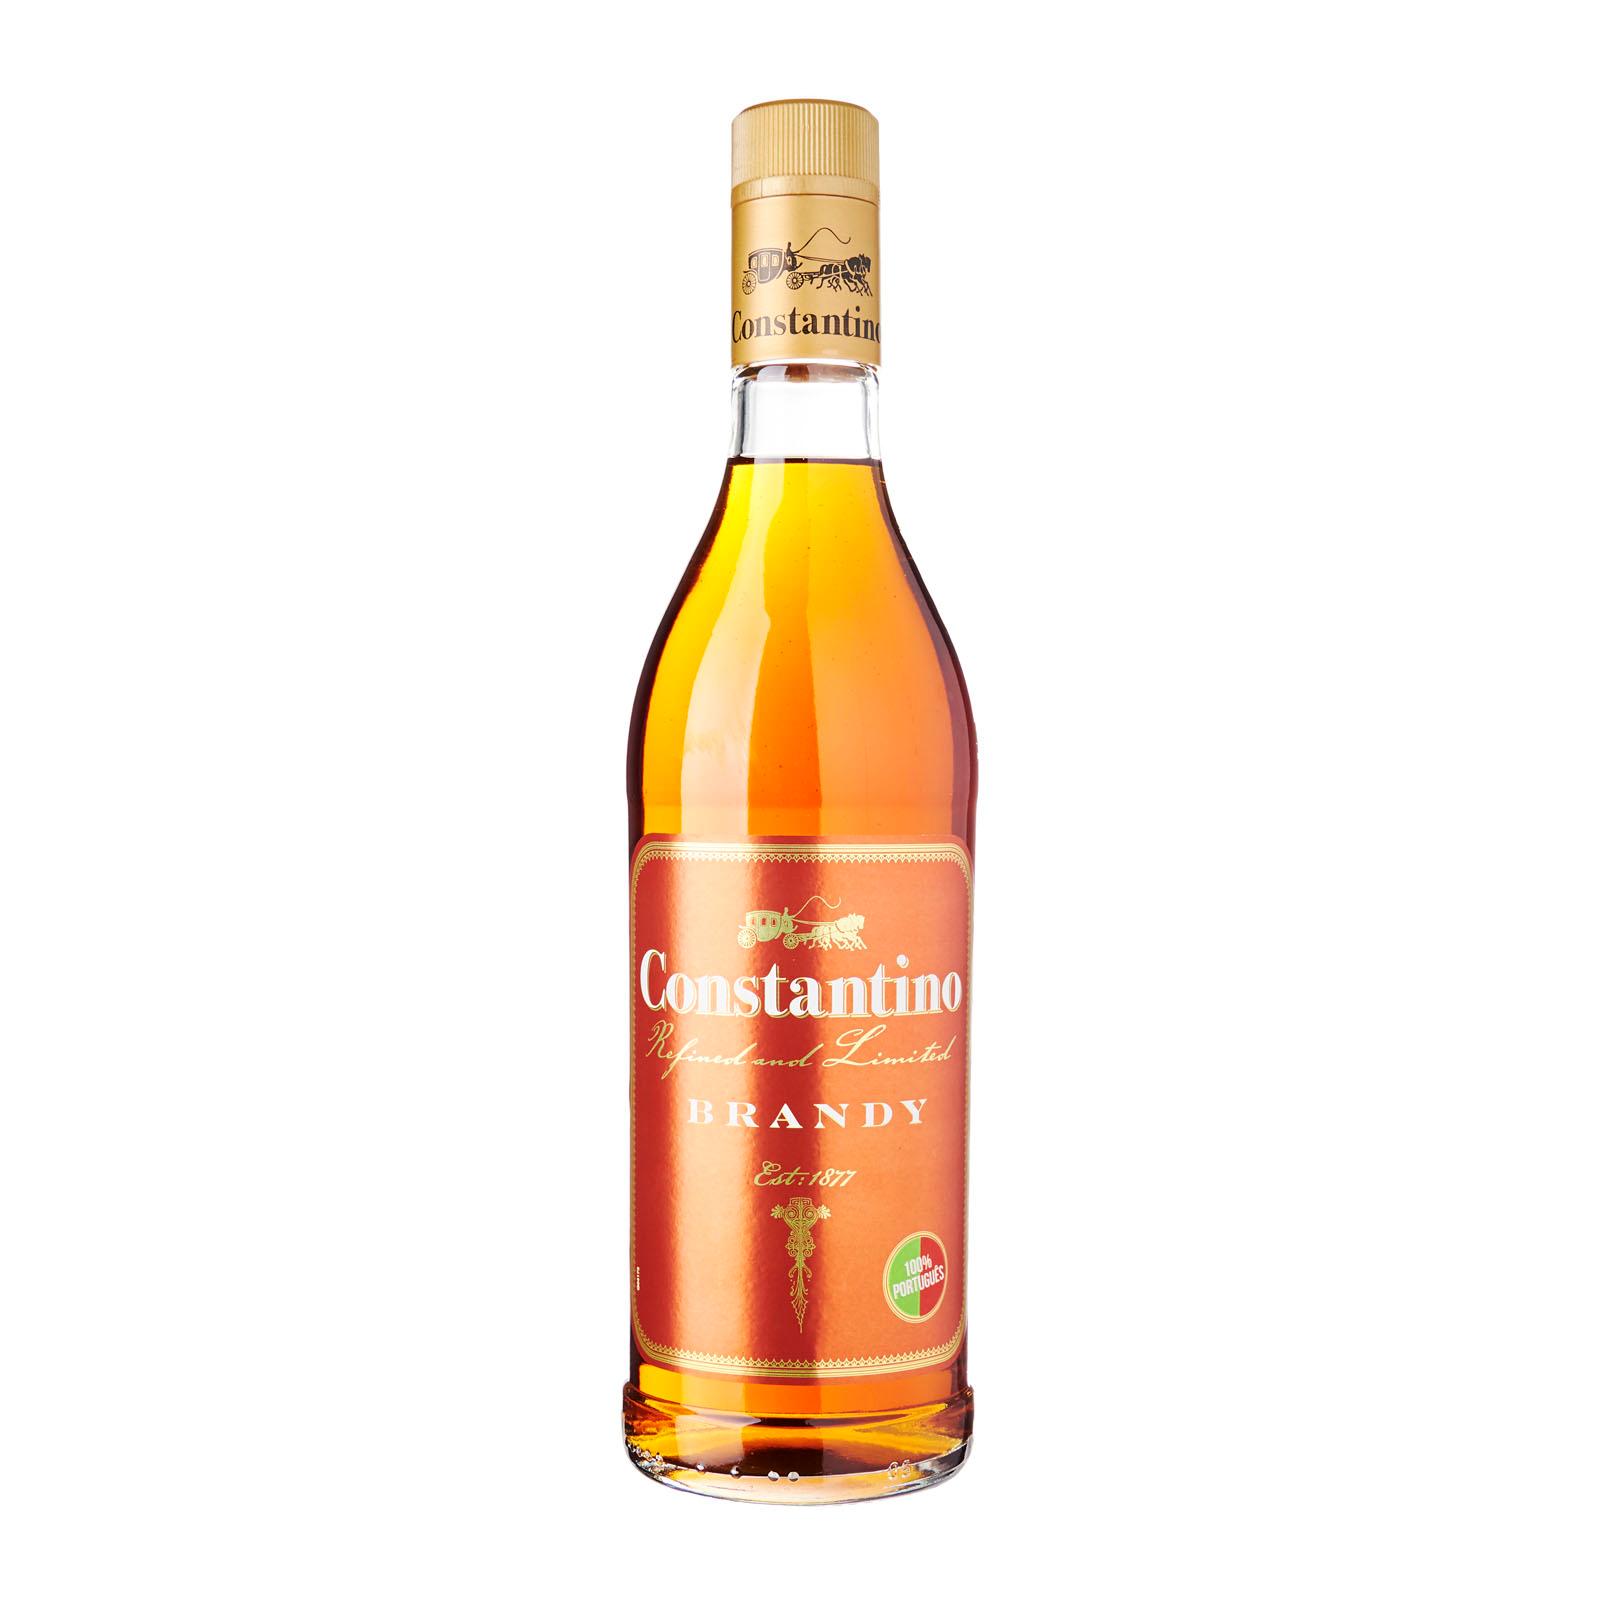 Constantino Classic Brandy – Portugal